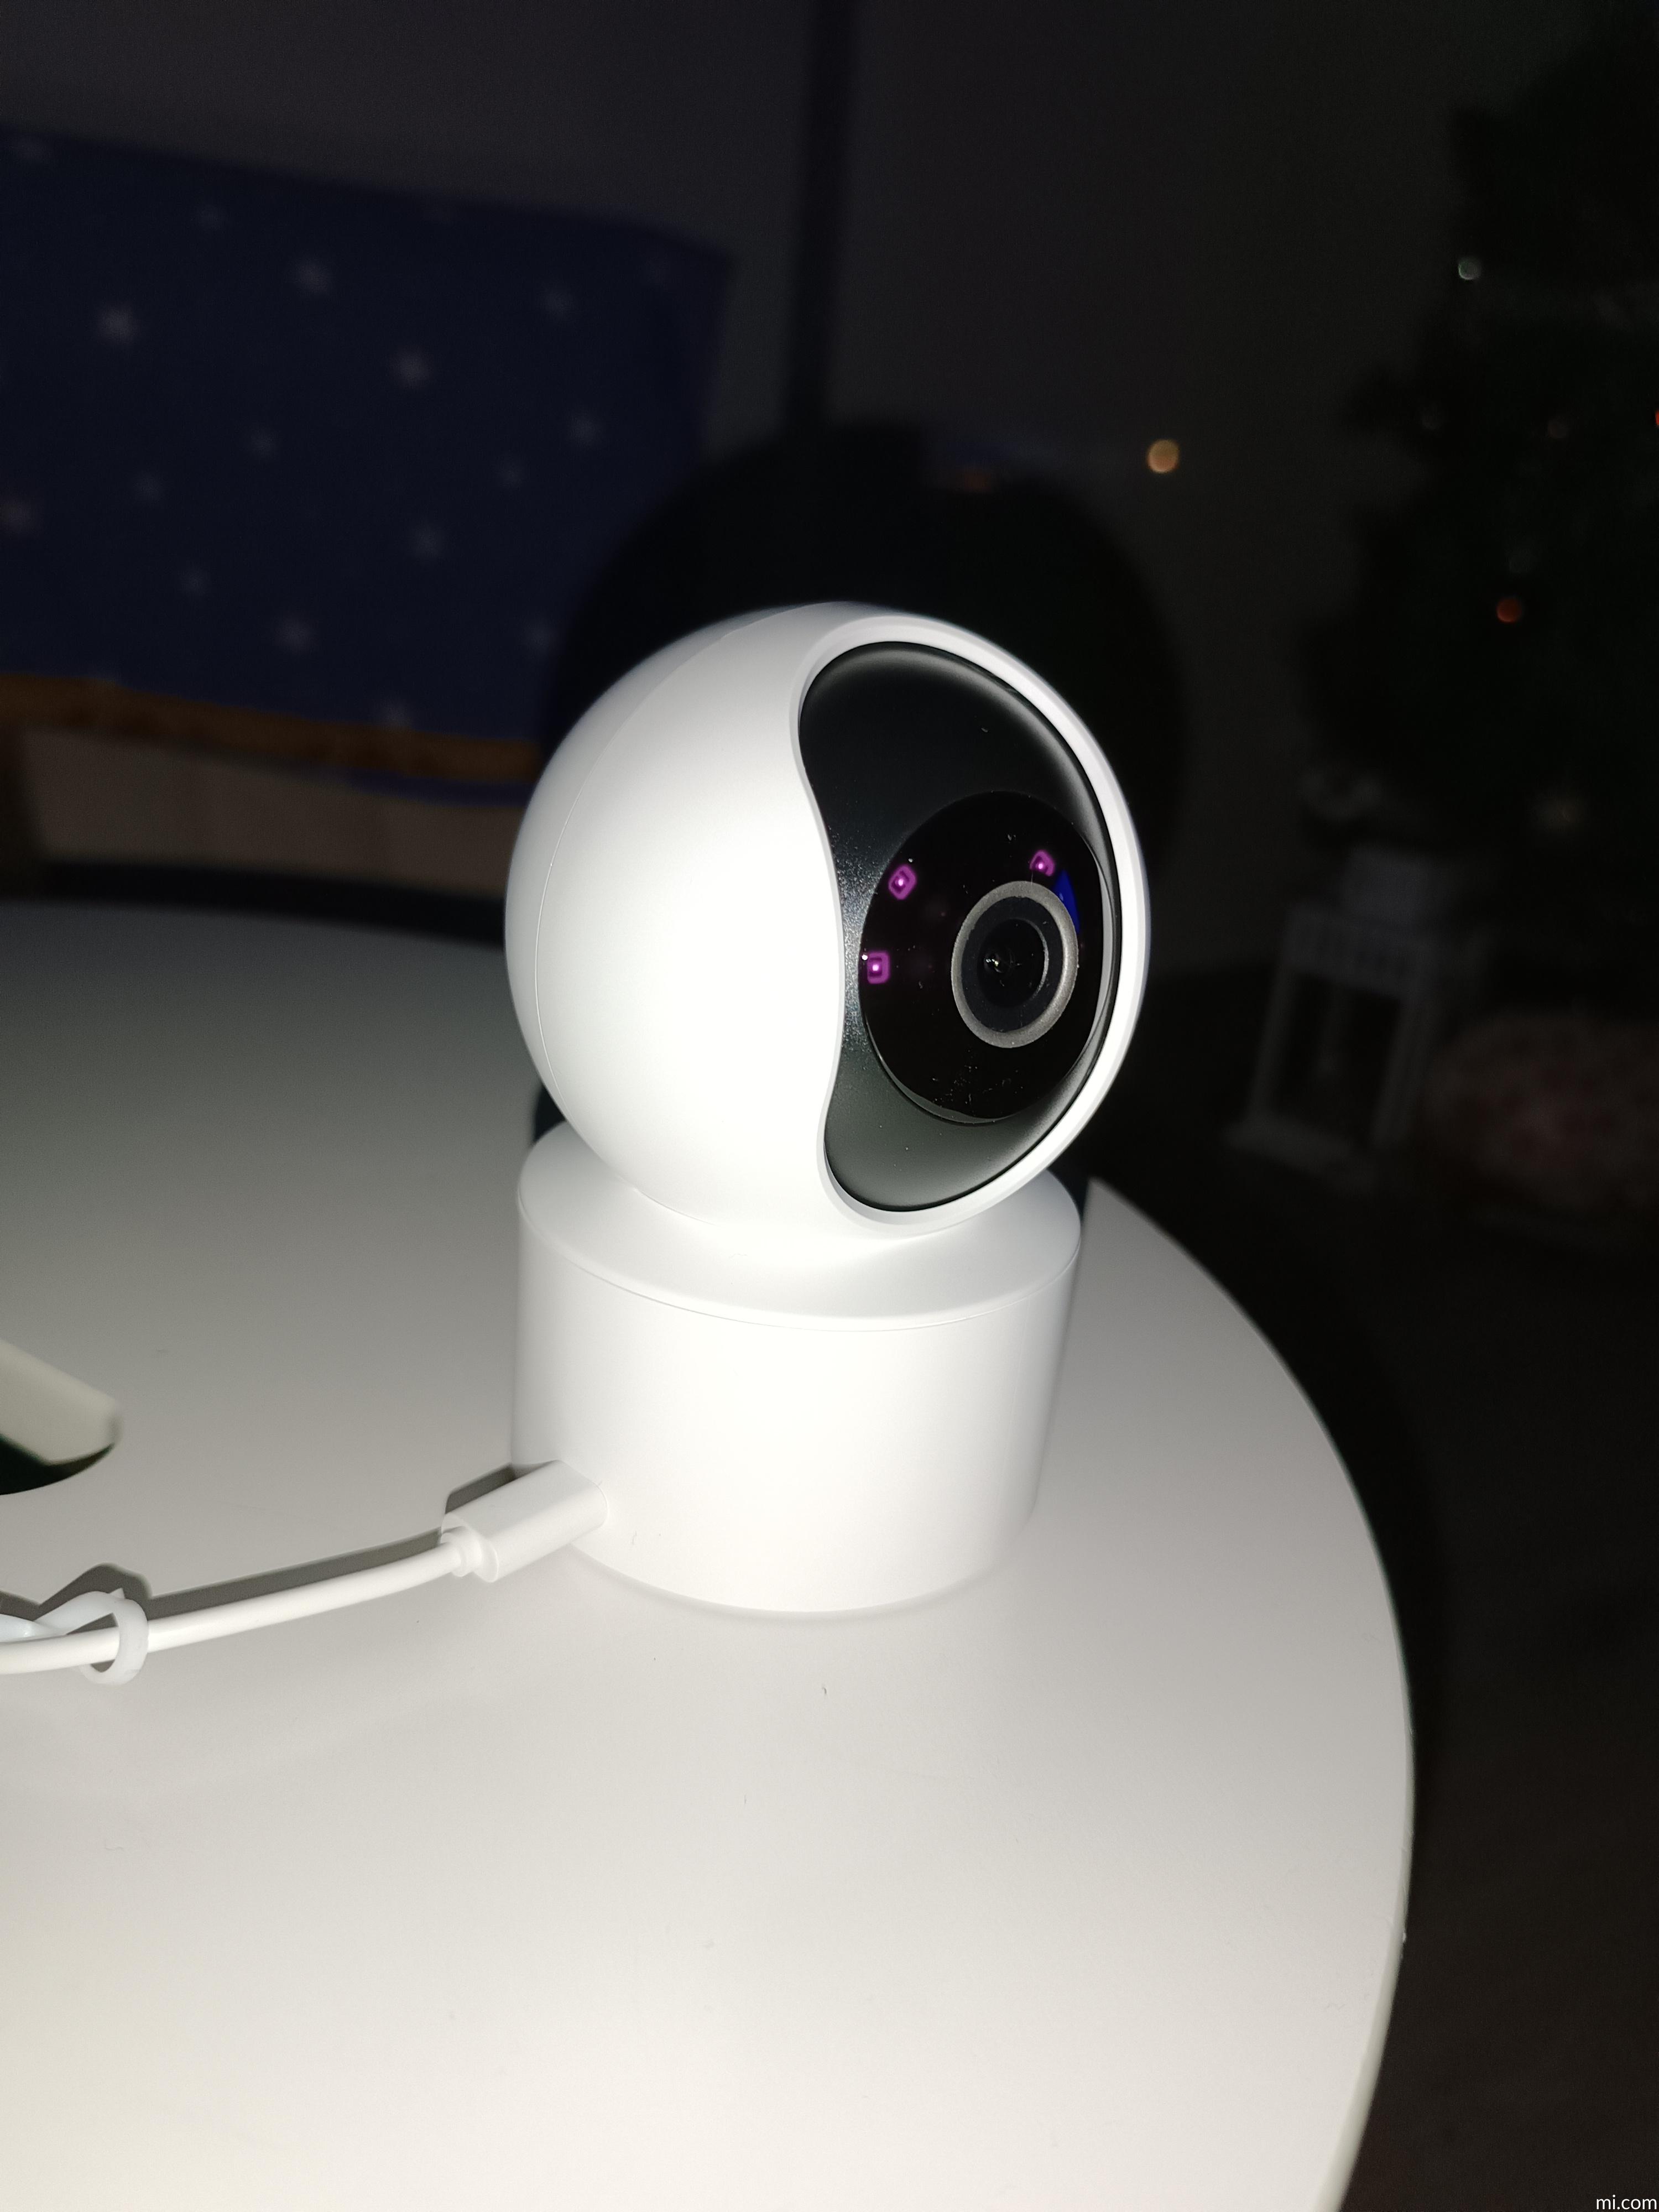 Mi 360° Camera (1080p), Xiaomi España